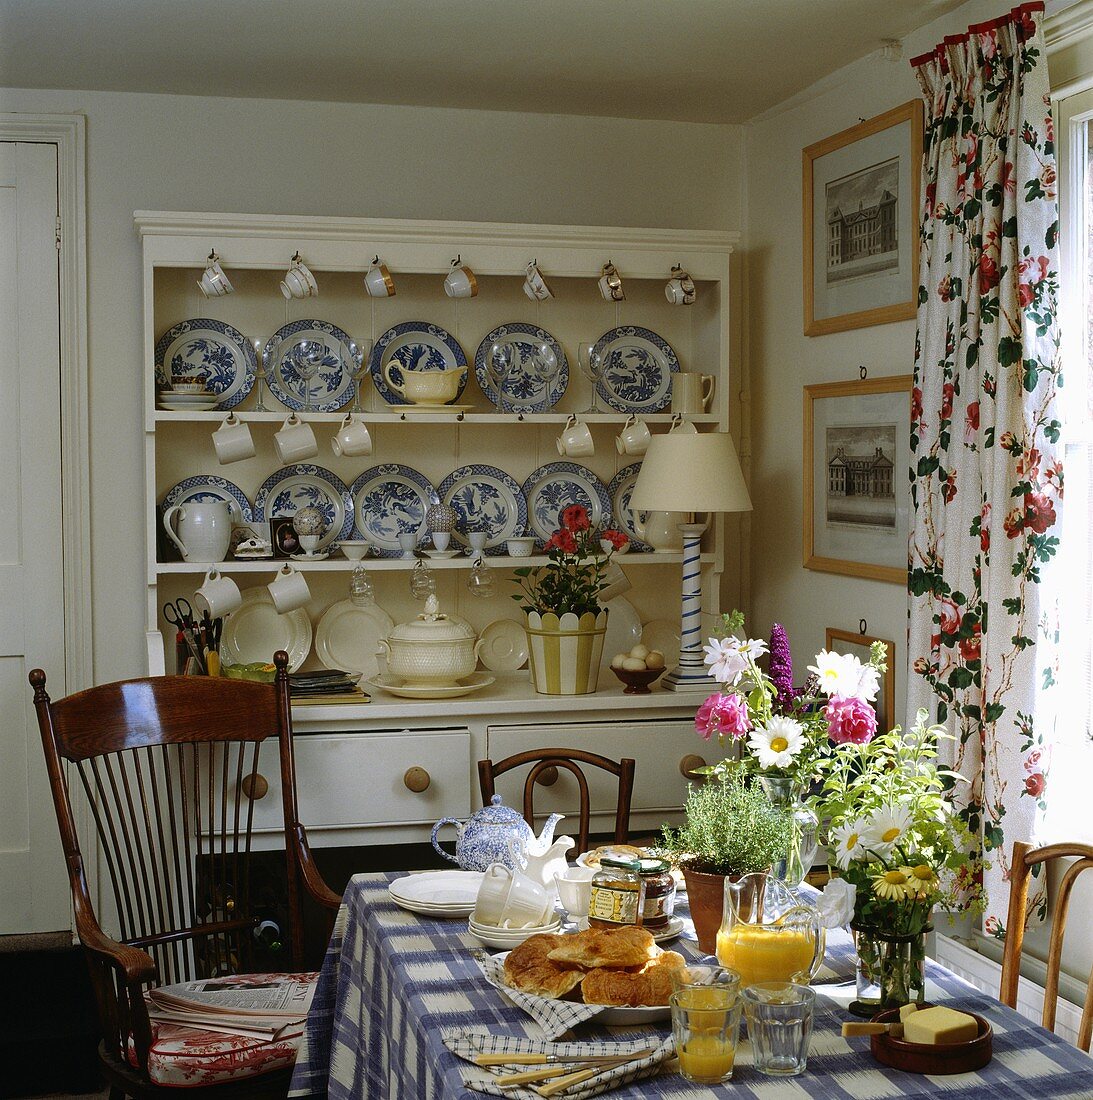 Esszimmer mit weißem Küchenbuffet mit blau-weissen Porzellantellern, gedecktem Frühstückstisch und einer karierten Tischdecke